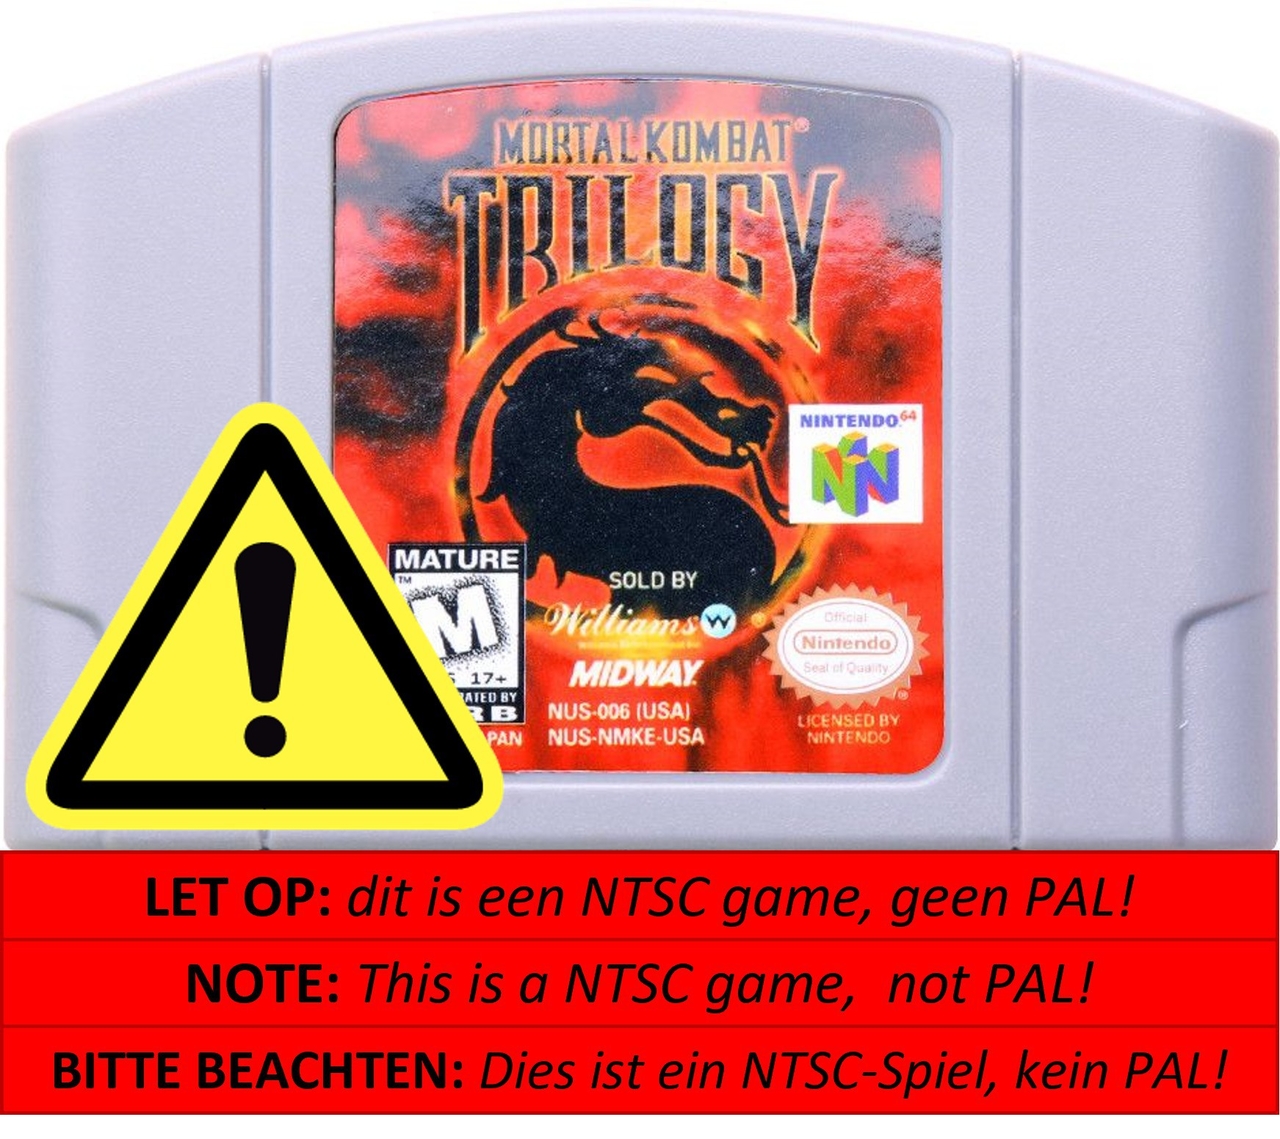 Mortal Kombat Trilogy [NTSC] - Nintendo 64 Games